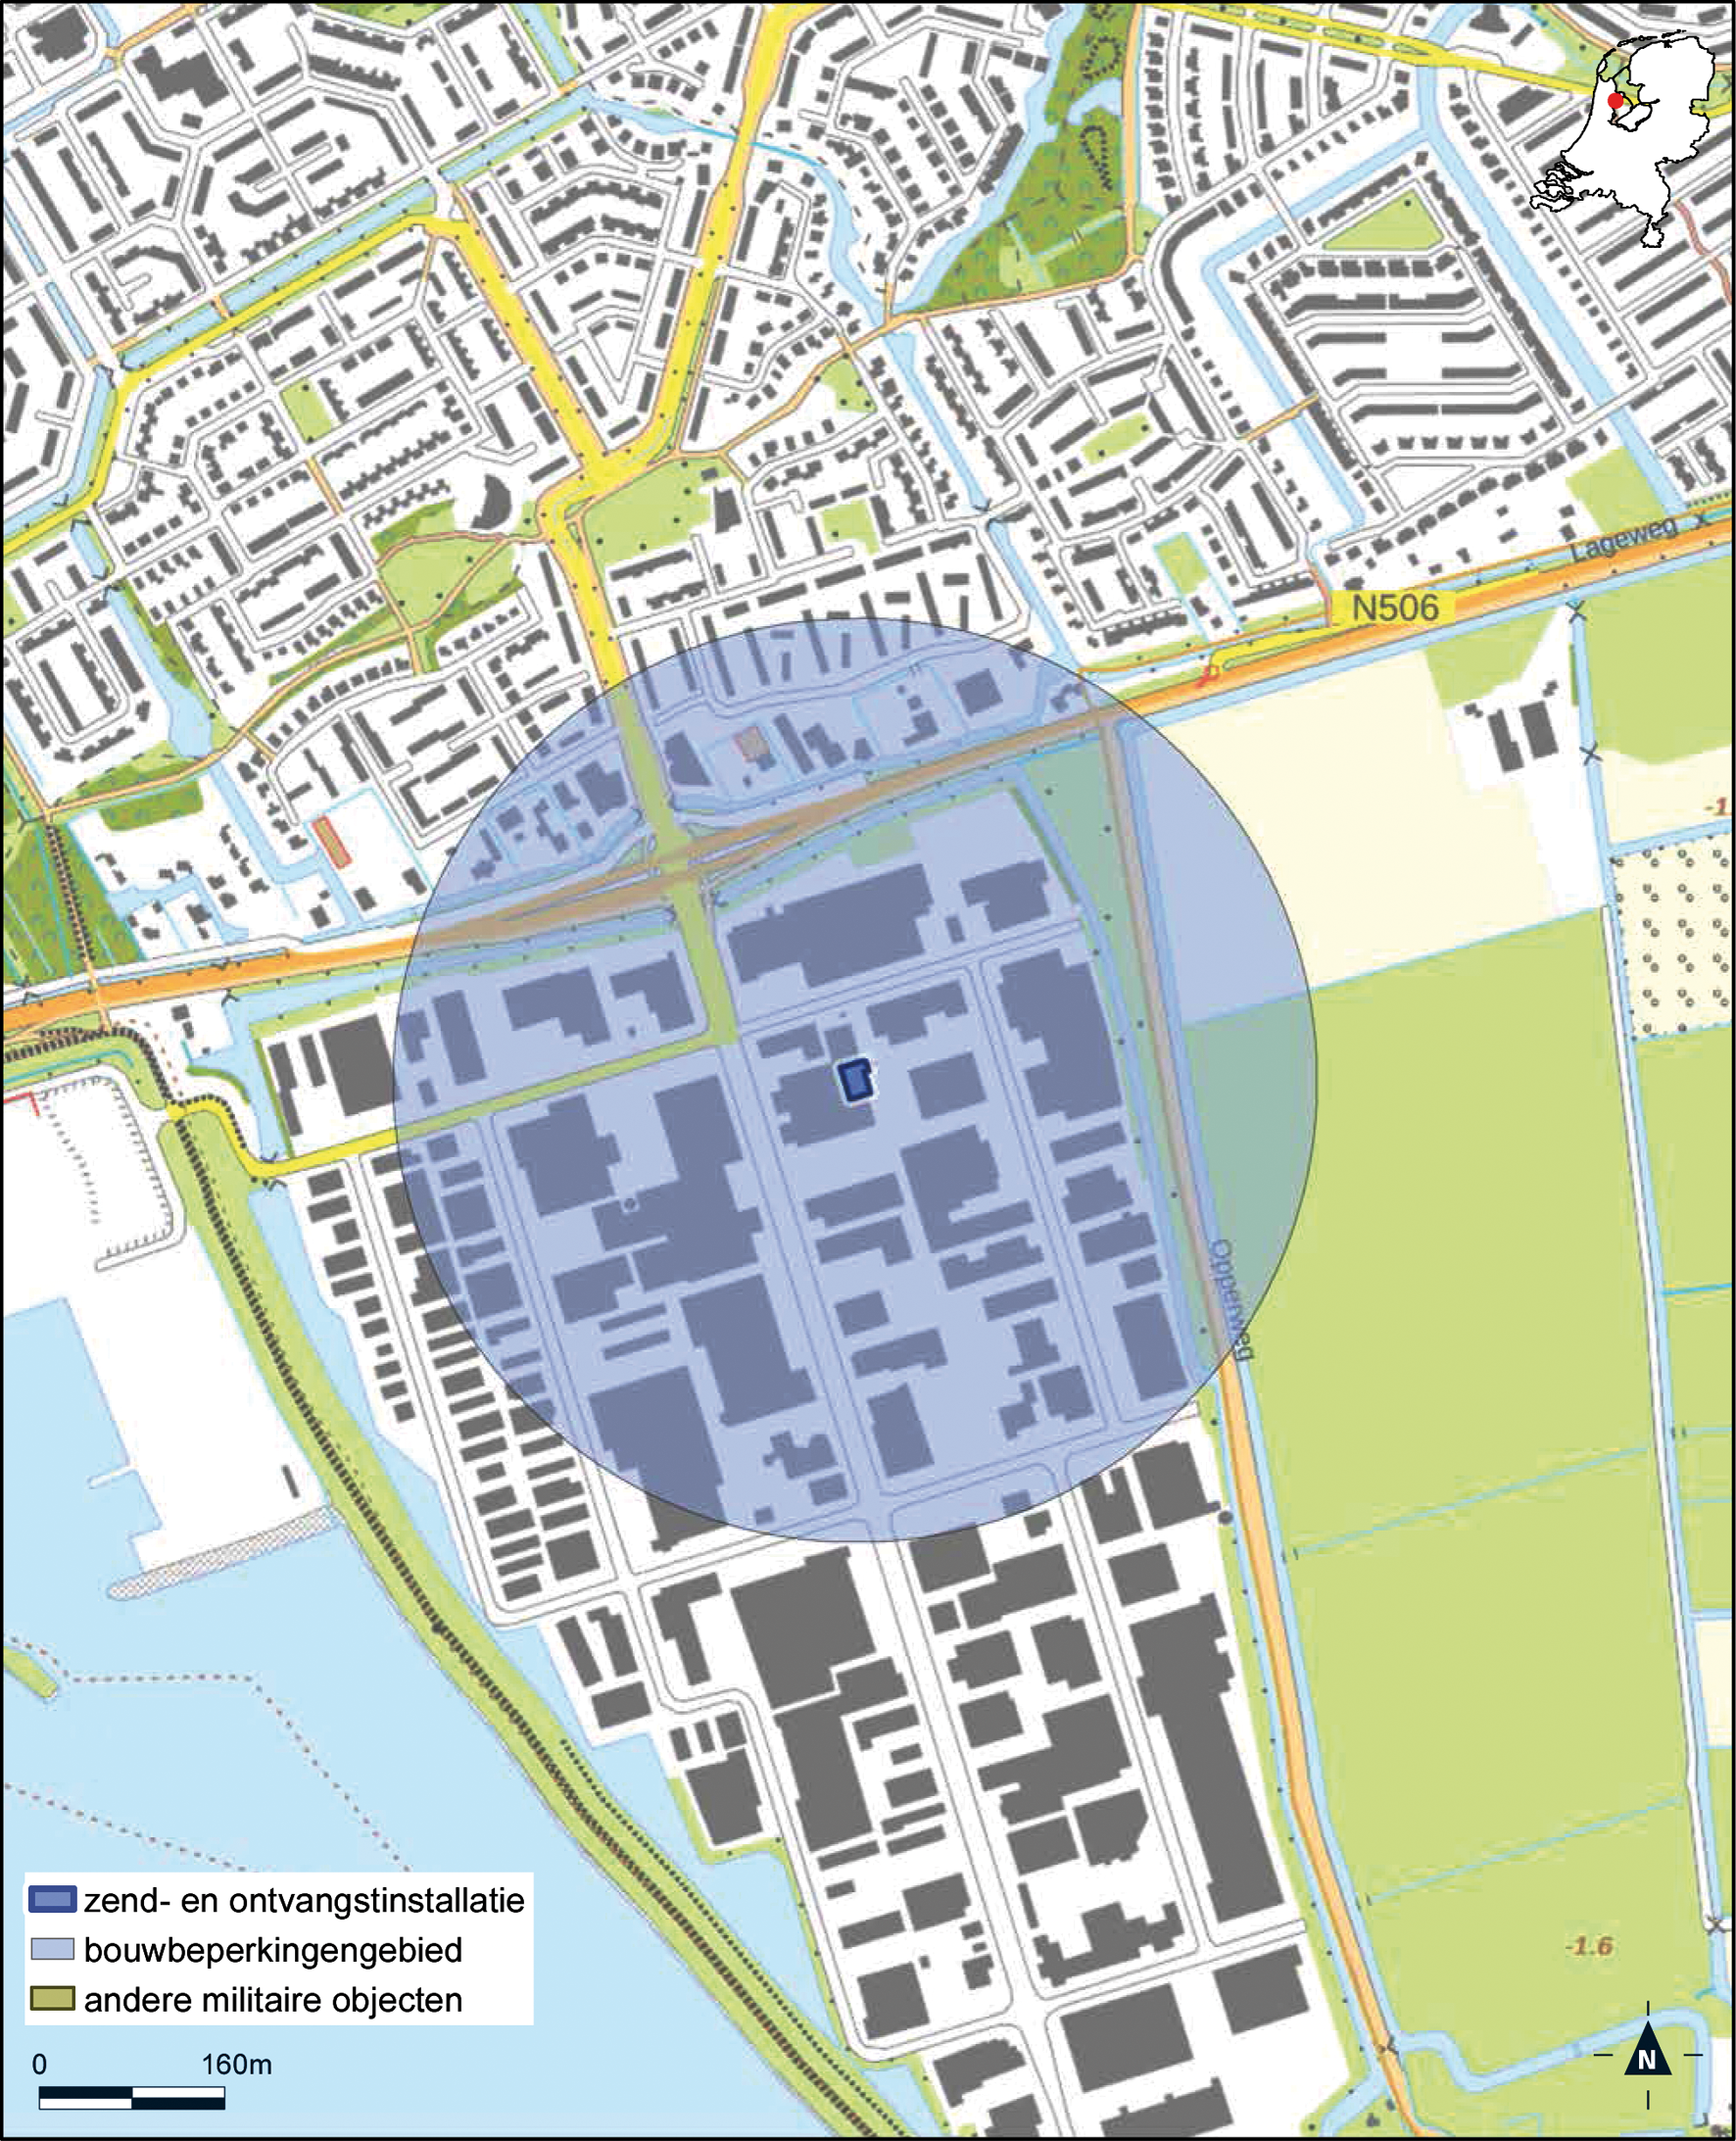 Kaart zend- en ontvangstinstallatie buiten militair luchtvaartterrein antennepark Hoorn